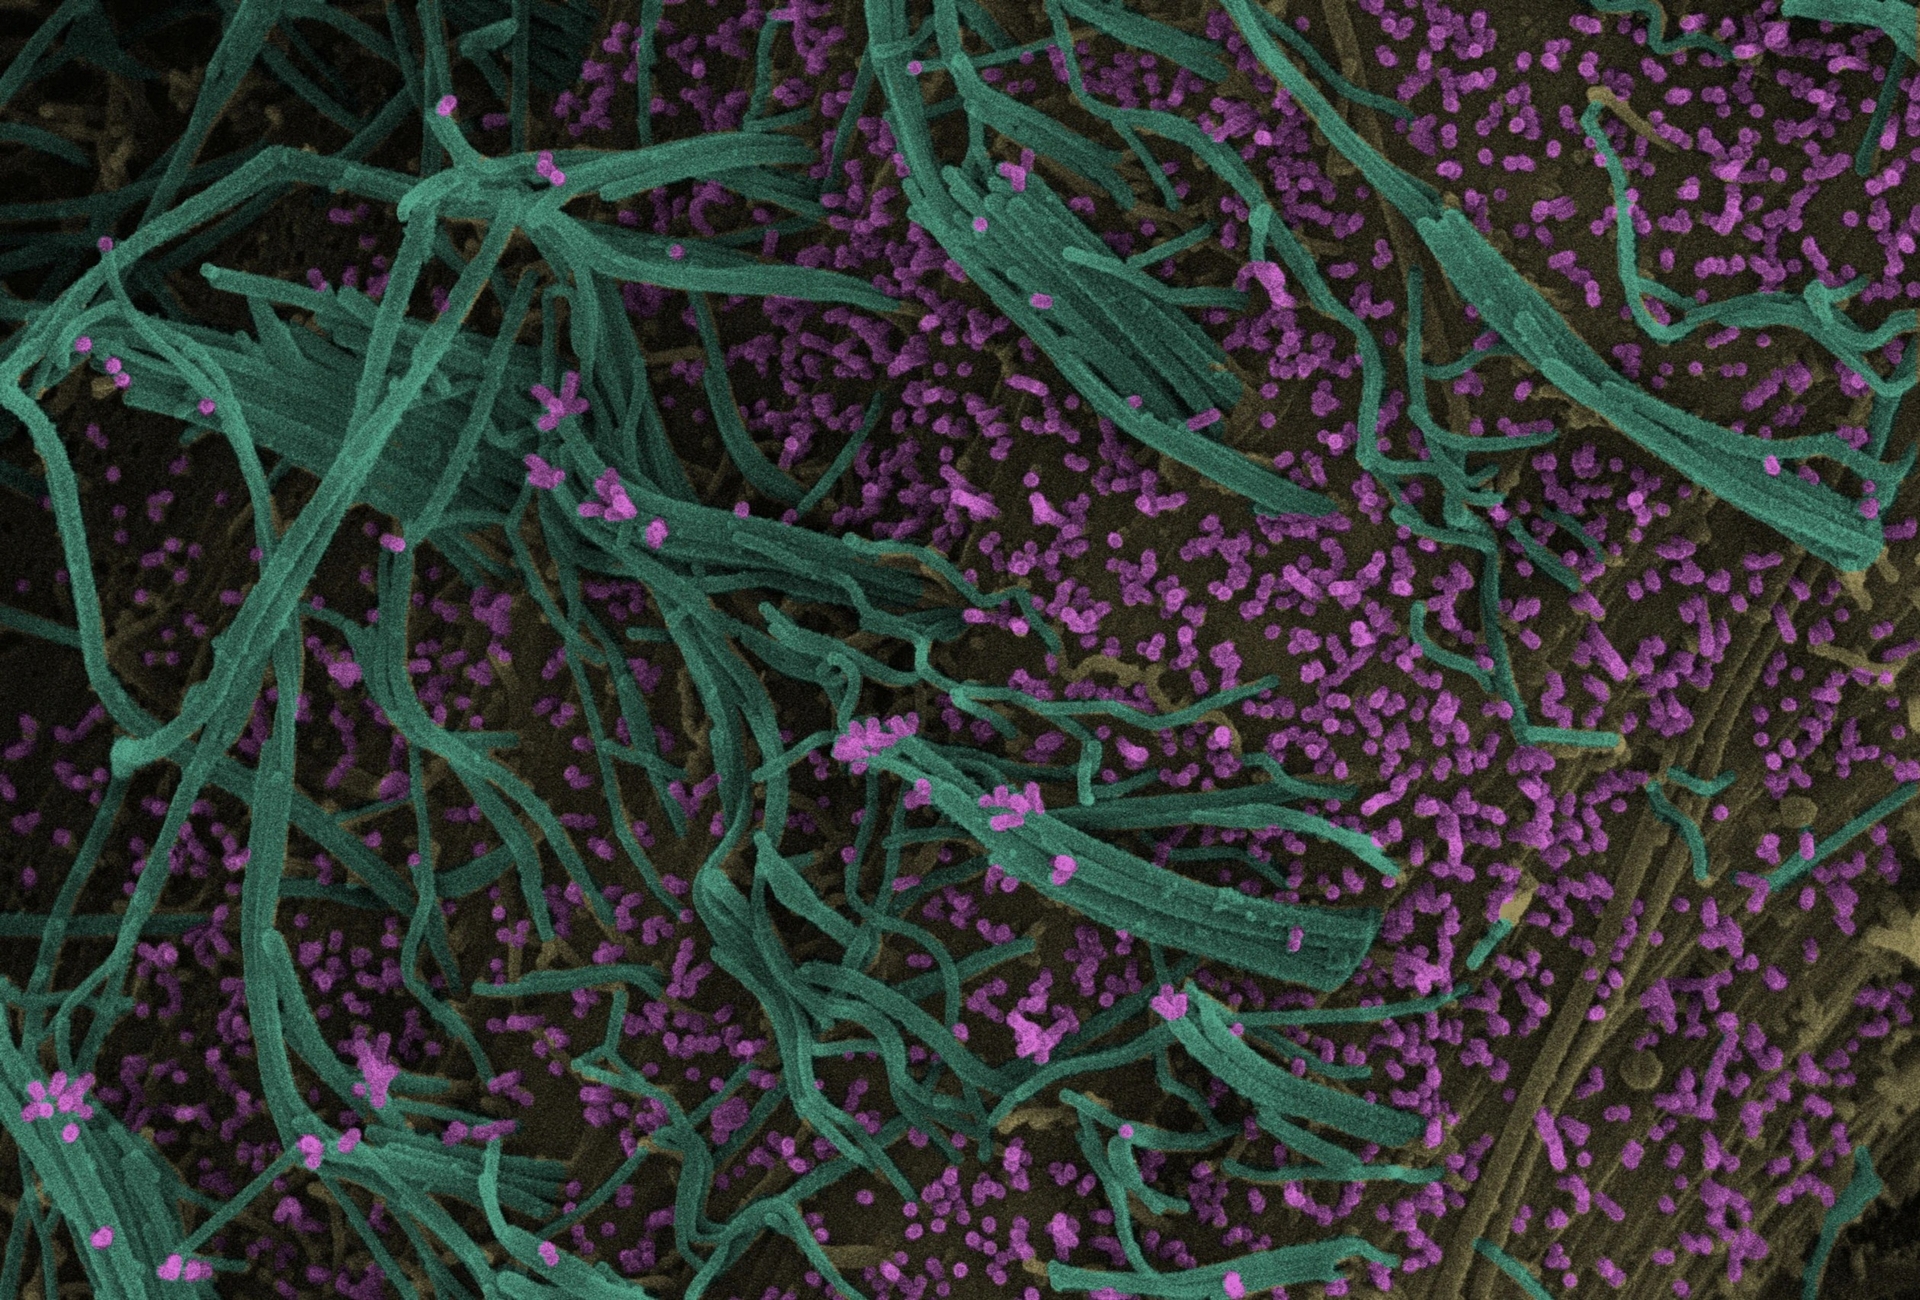 掃描式電子顯微鏡的影像顯示，同時感染A型流感和呼吸道融合病毒（RSV）的人類肺細胞會製造雜交病毒顆粒。流感病毒顆粒（粉色）和RSV細絲（綠色）從細胞表面（黃色）突出，而雜交病毒顆粒同時含有類似流感病毒及RSV的區域。PHOTOGRAPH BY JOANNE HANEY AND MARGARET MULLIN, UNIVERSITY OF GLASGOW CENTRE FOR VIRUS RESEARCH